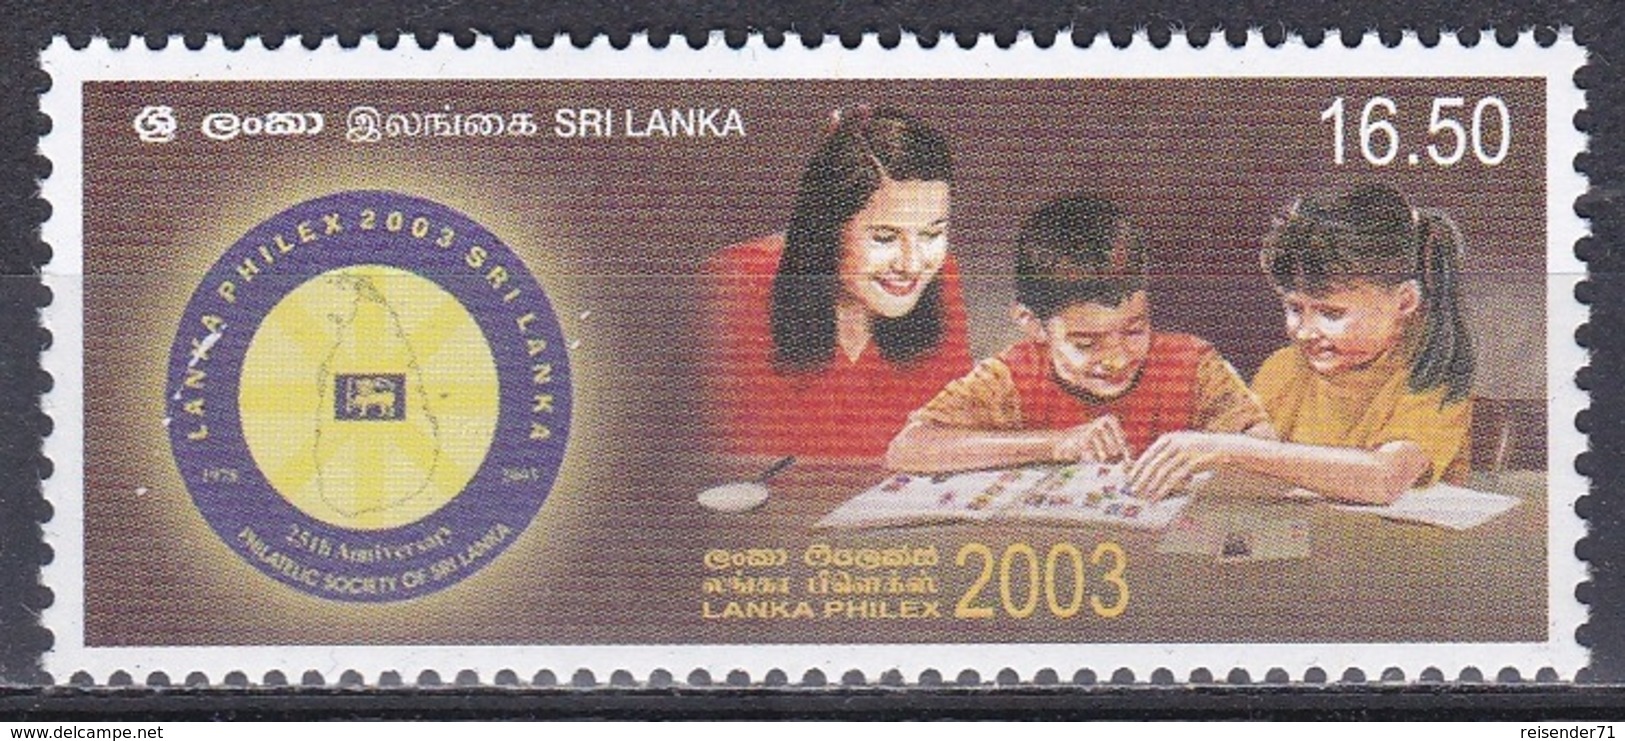 Sri Lanka 2003 Philatelie Philately Briefmarkenausstellung Stamp Exhibition LANKAPHILEX KInder Children, Mi. 1403 ** - Sri Lanka (Ceilán) (1948-...)